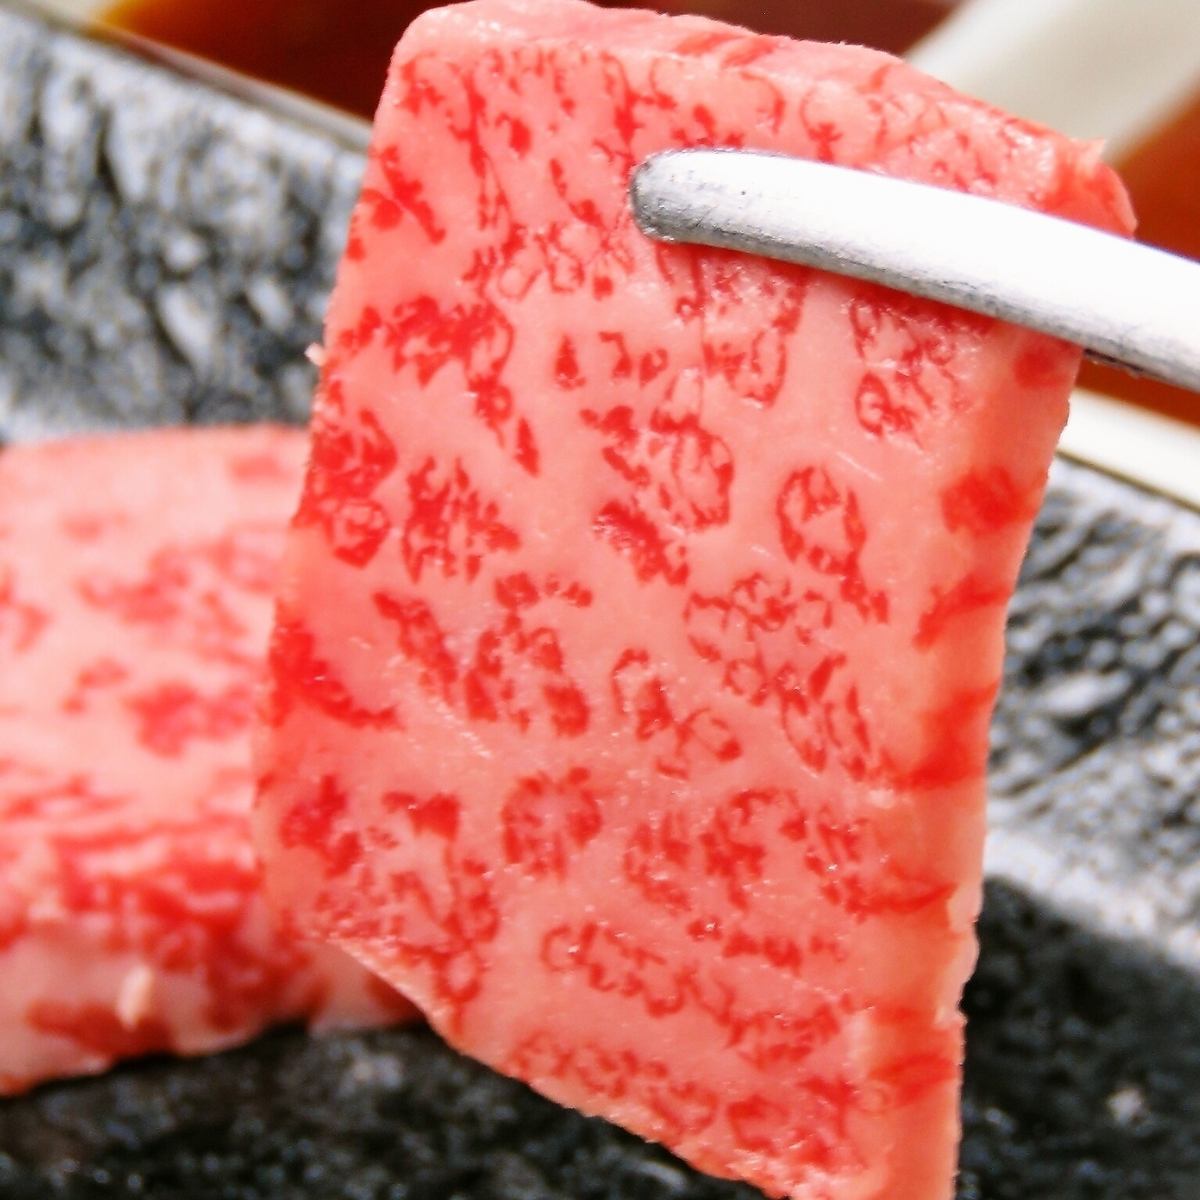 고기의 품질과 맛에 자신있어! A5 랭크의 일본 흑소를 사용한 고기를 드셔보세요!